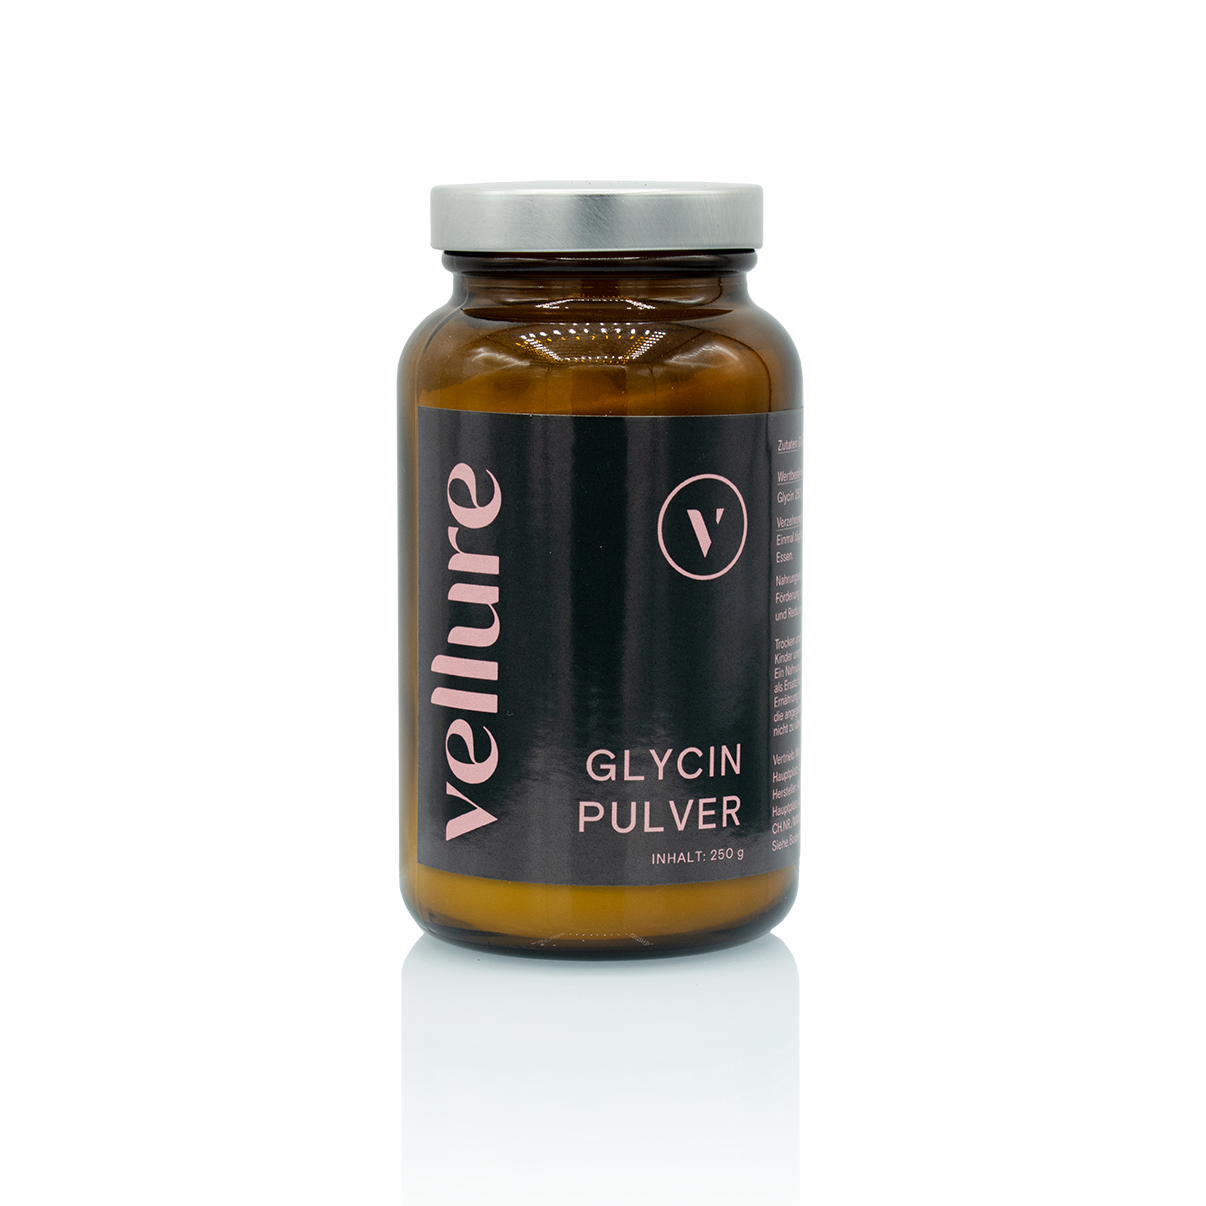 Braune Glasverpackung mit silbernem Deckel und schwarzer Banderole des Glycin Pulvers mit Kollagen.